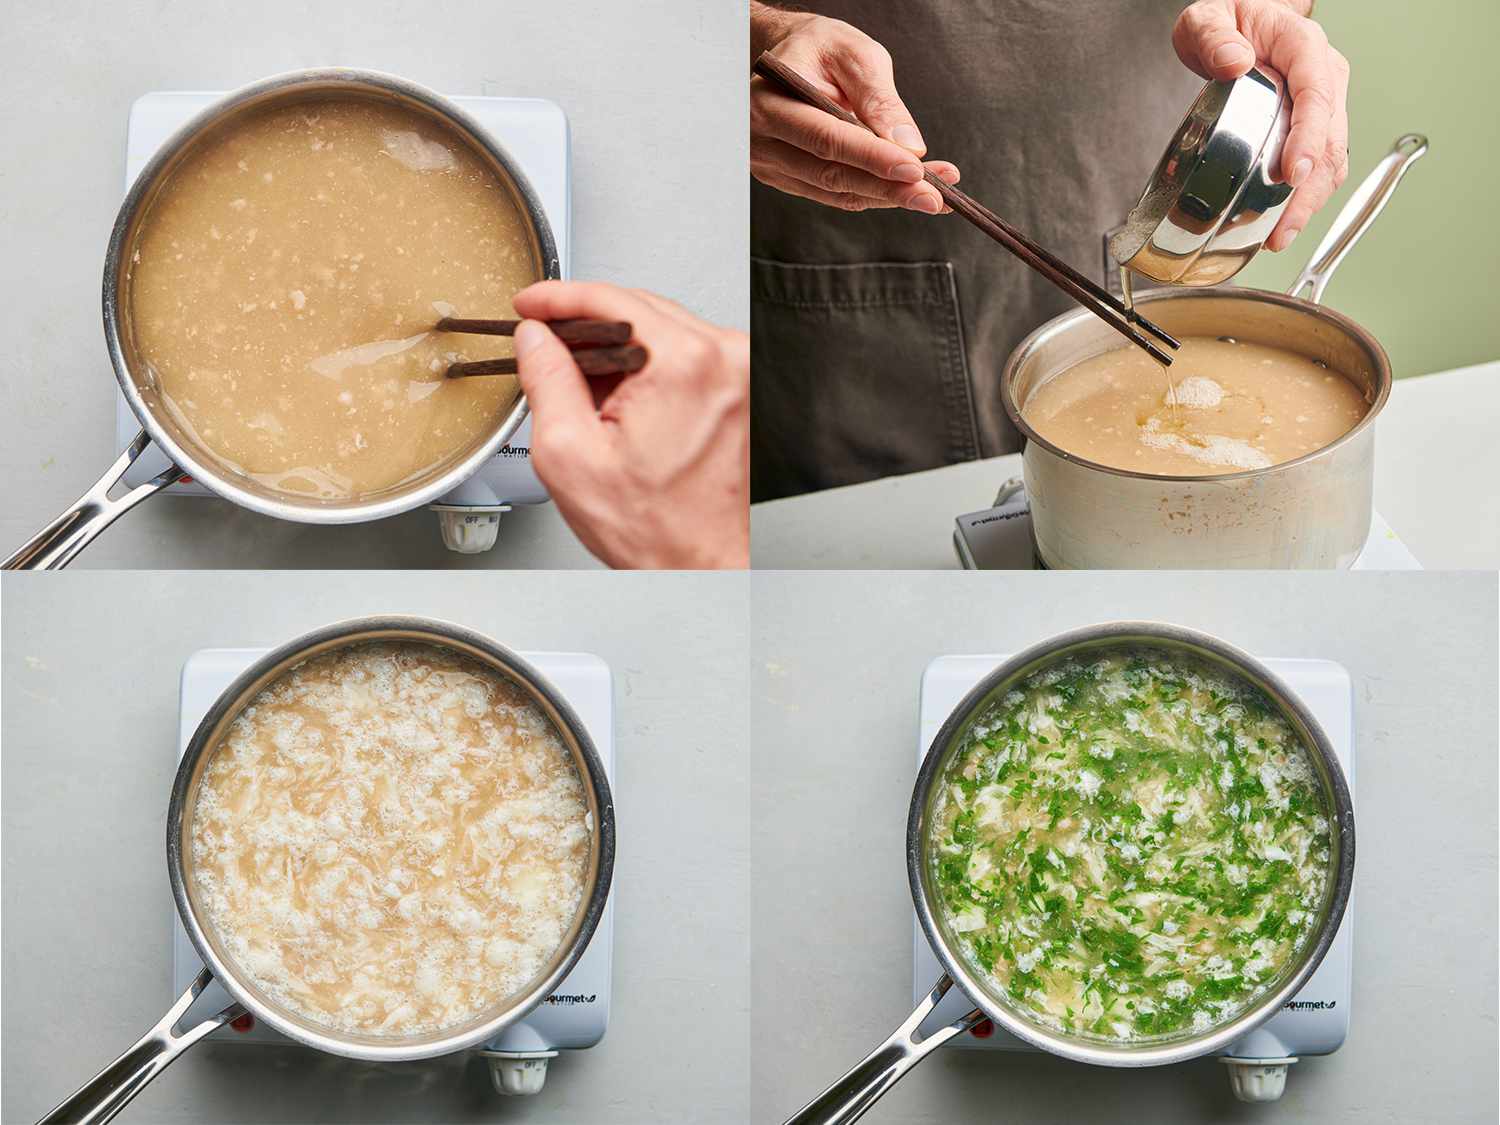 4个成像拼贴。左上角的图像显示了卤水碎肉分解在一个包含浓肉汤的锅。右上方的图像显示了蛋清打到一边搅着汤煨汤在慢慢地用一双筷子的烹饪。左下角的图片显示的是鸡蛋凝固在细长的线在浓汤倒在平底锅里。右下角的图像显示切碎的香菜纳入平底锅的汤里面。